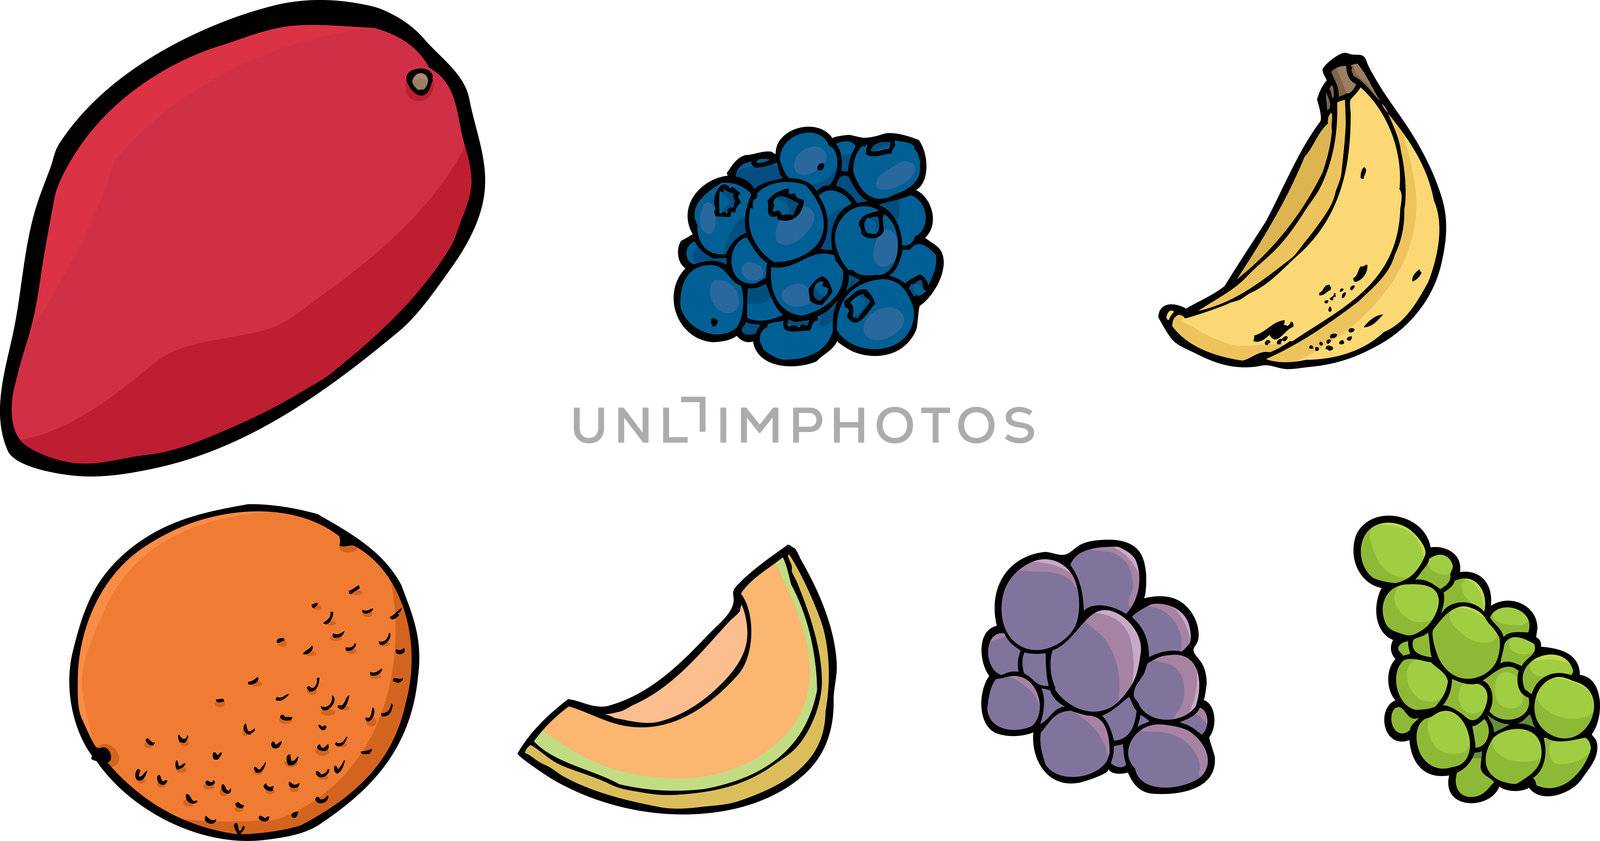 Isolated illustrations of mango, blueberries, bananas, orange, cantaloupe slice and grape on white